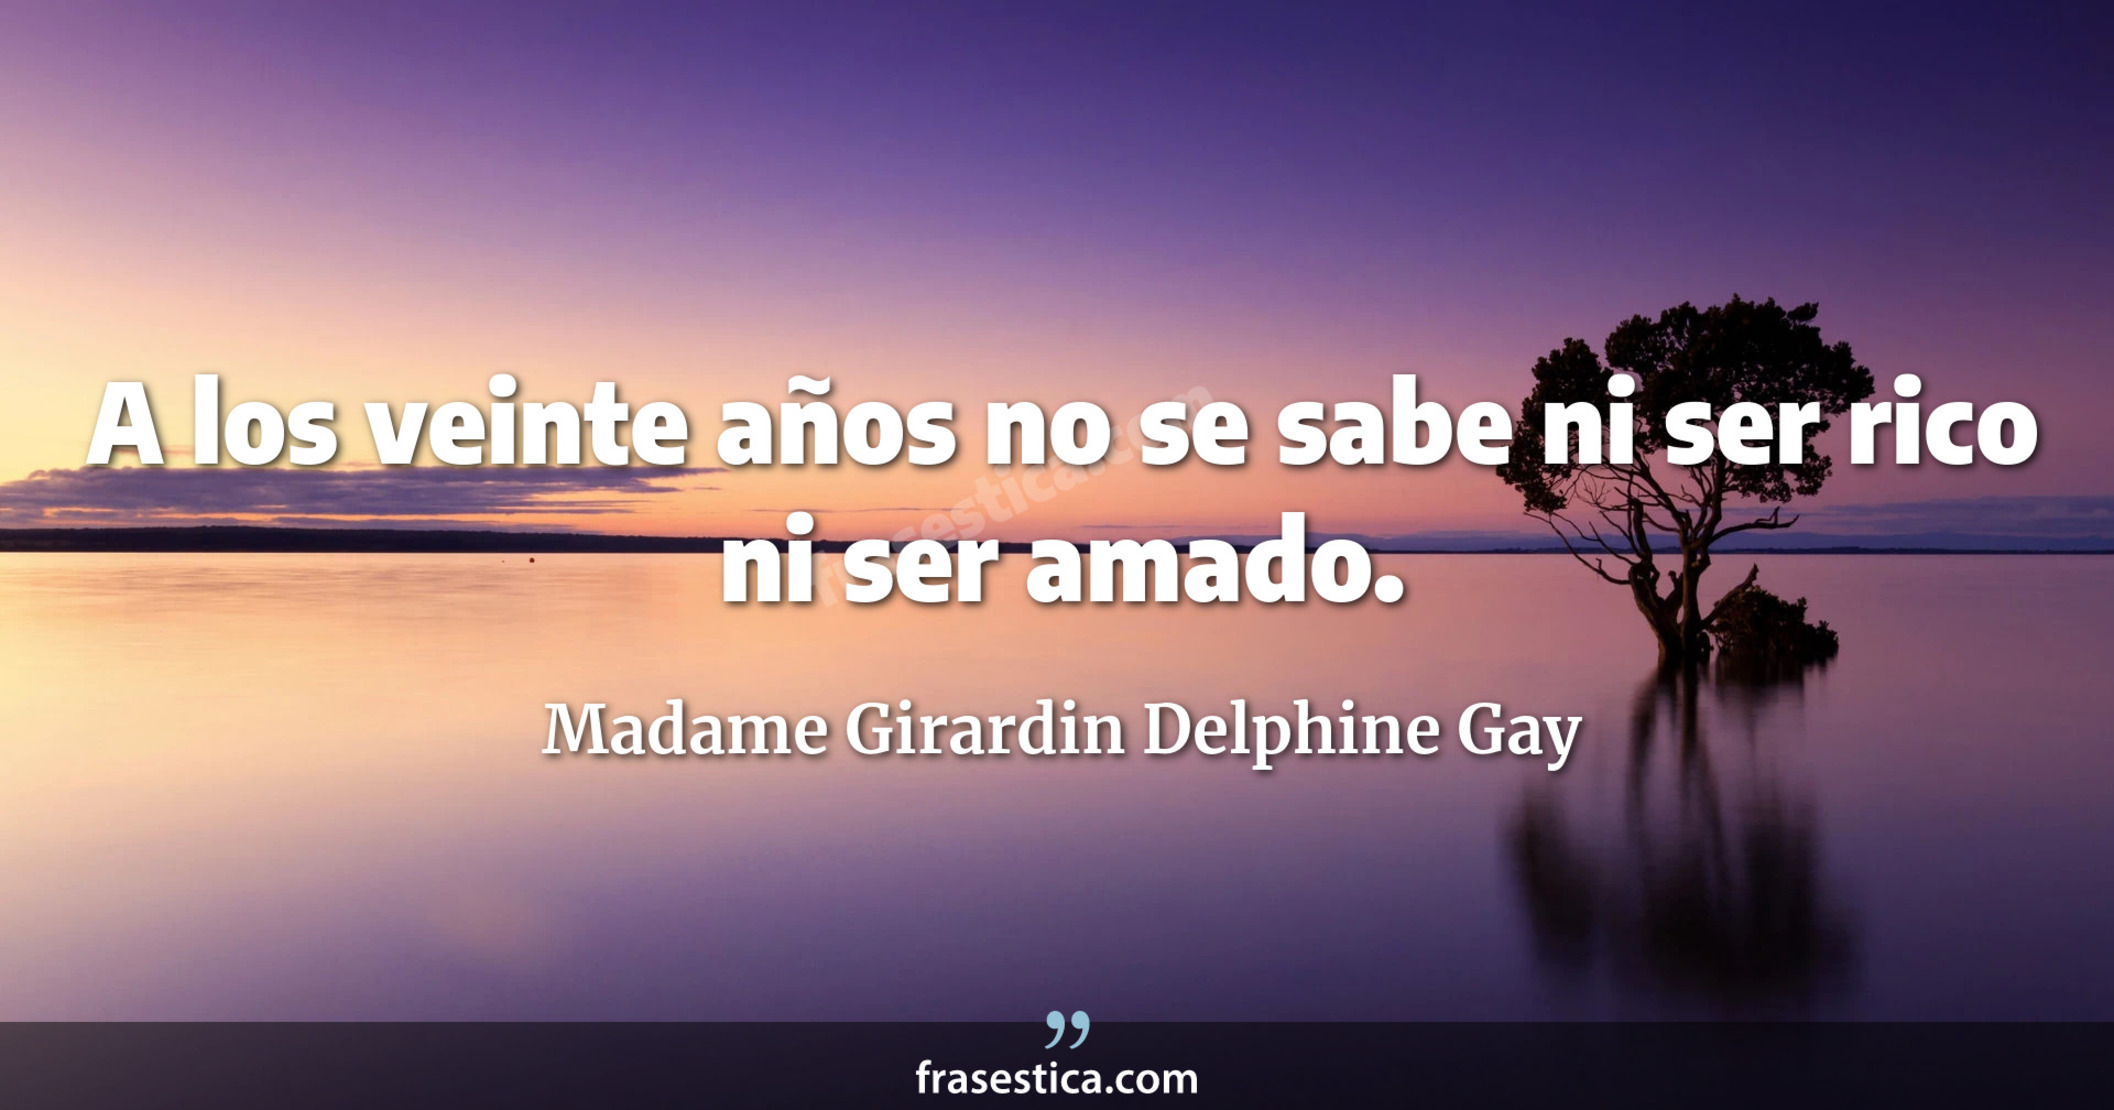 A los veinte años no se sabe ni ser rico ni ser amado. - Madame Girardin Delphine Gay